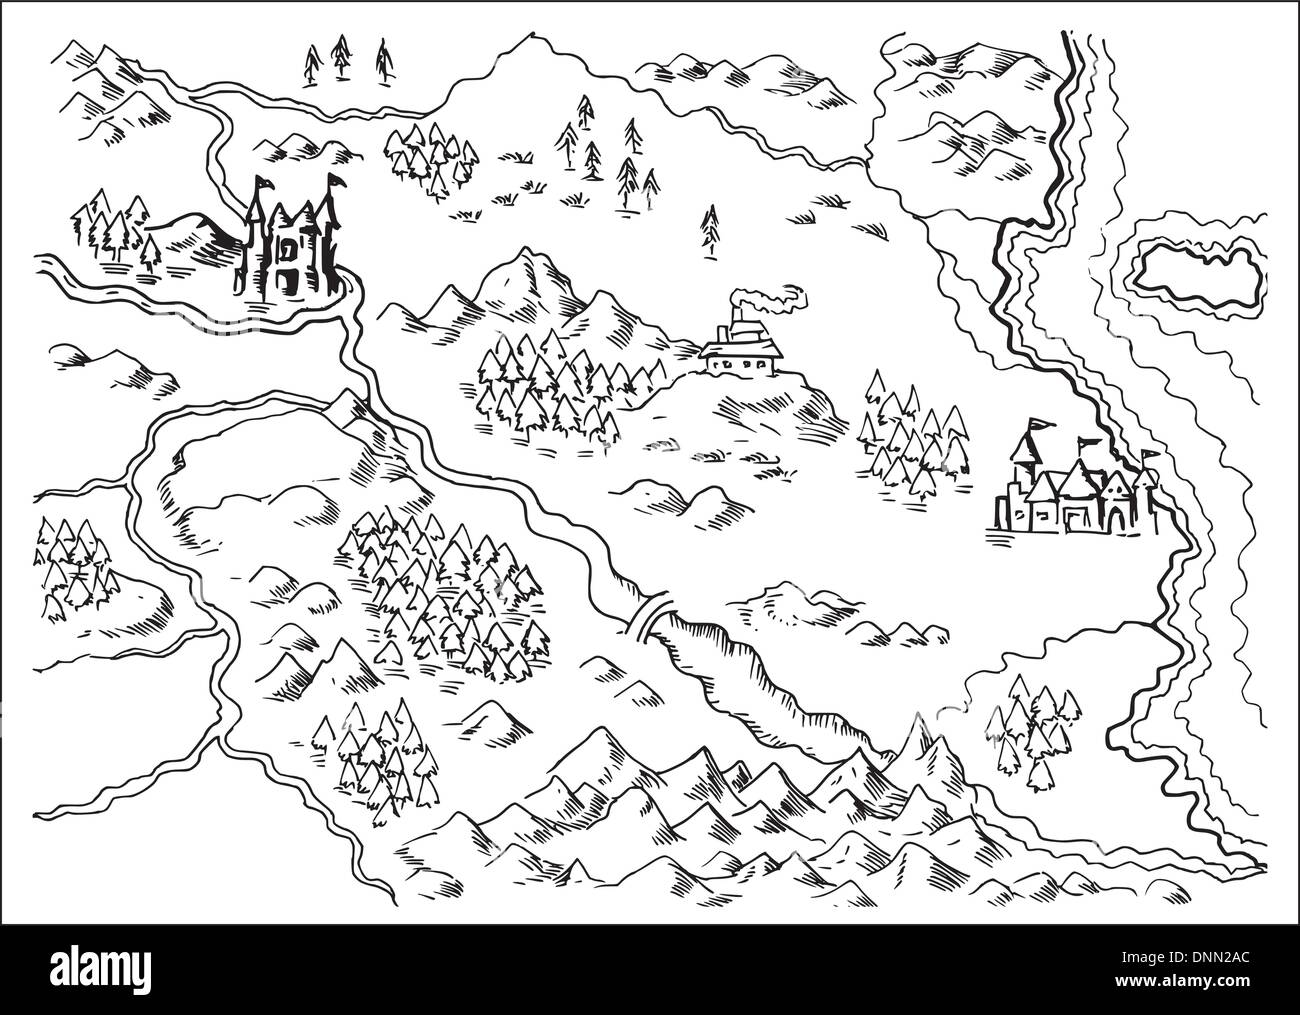 Illustration dessin d'une carte d'un pays imaginaire montrant les rivières, de montagnes,arbres,monastère,châteaux,route,mer,terre,côte sur fond blanc Illustration de Vecteur